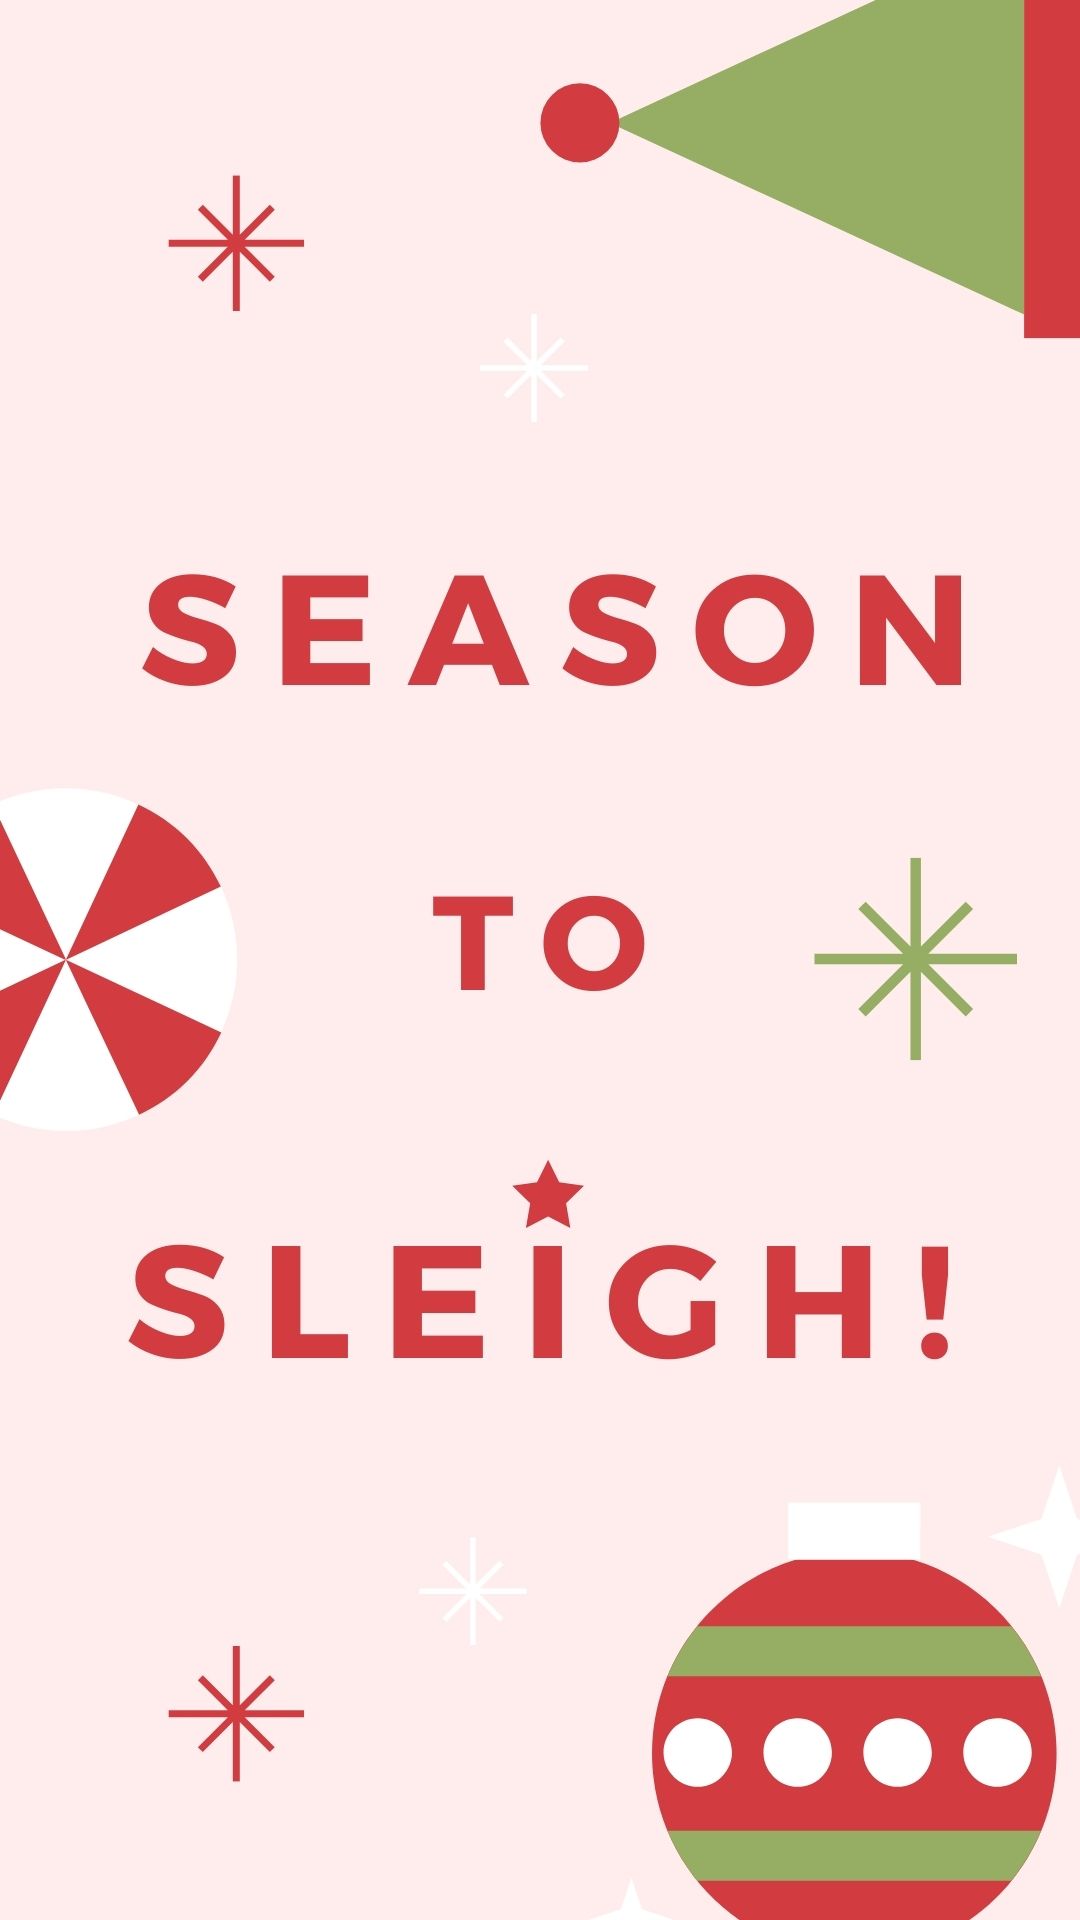 Season to Sleigh